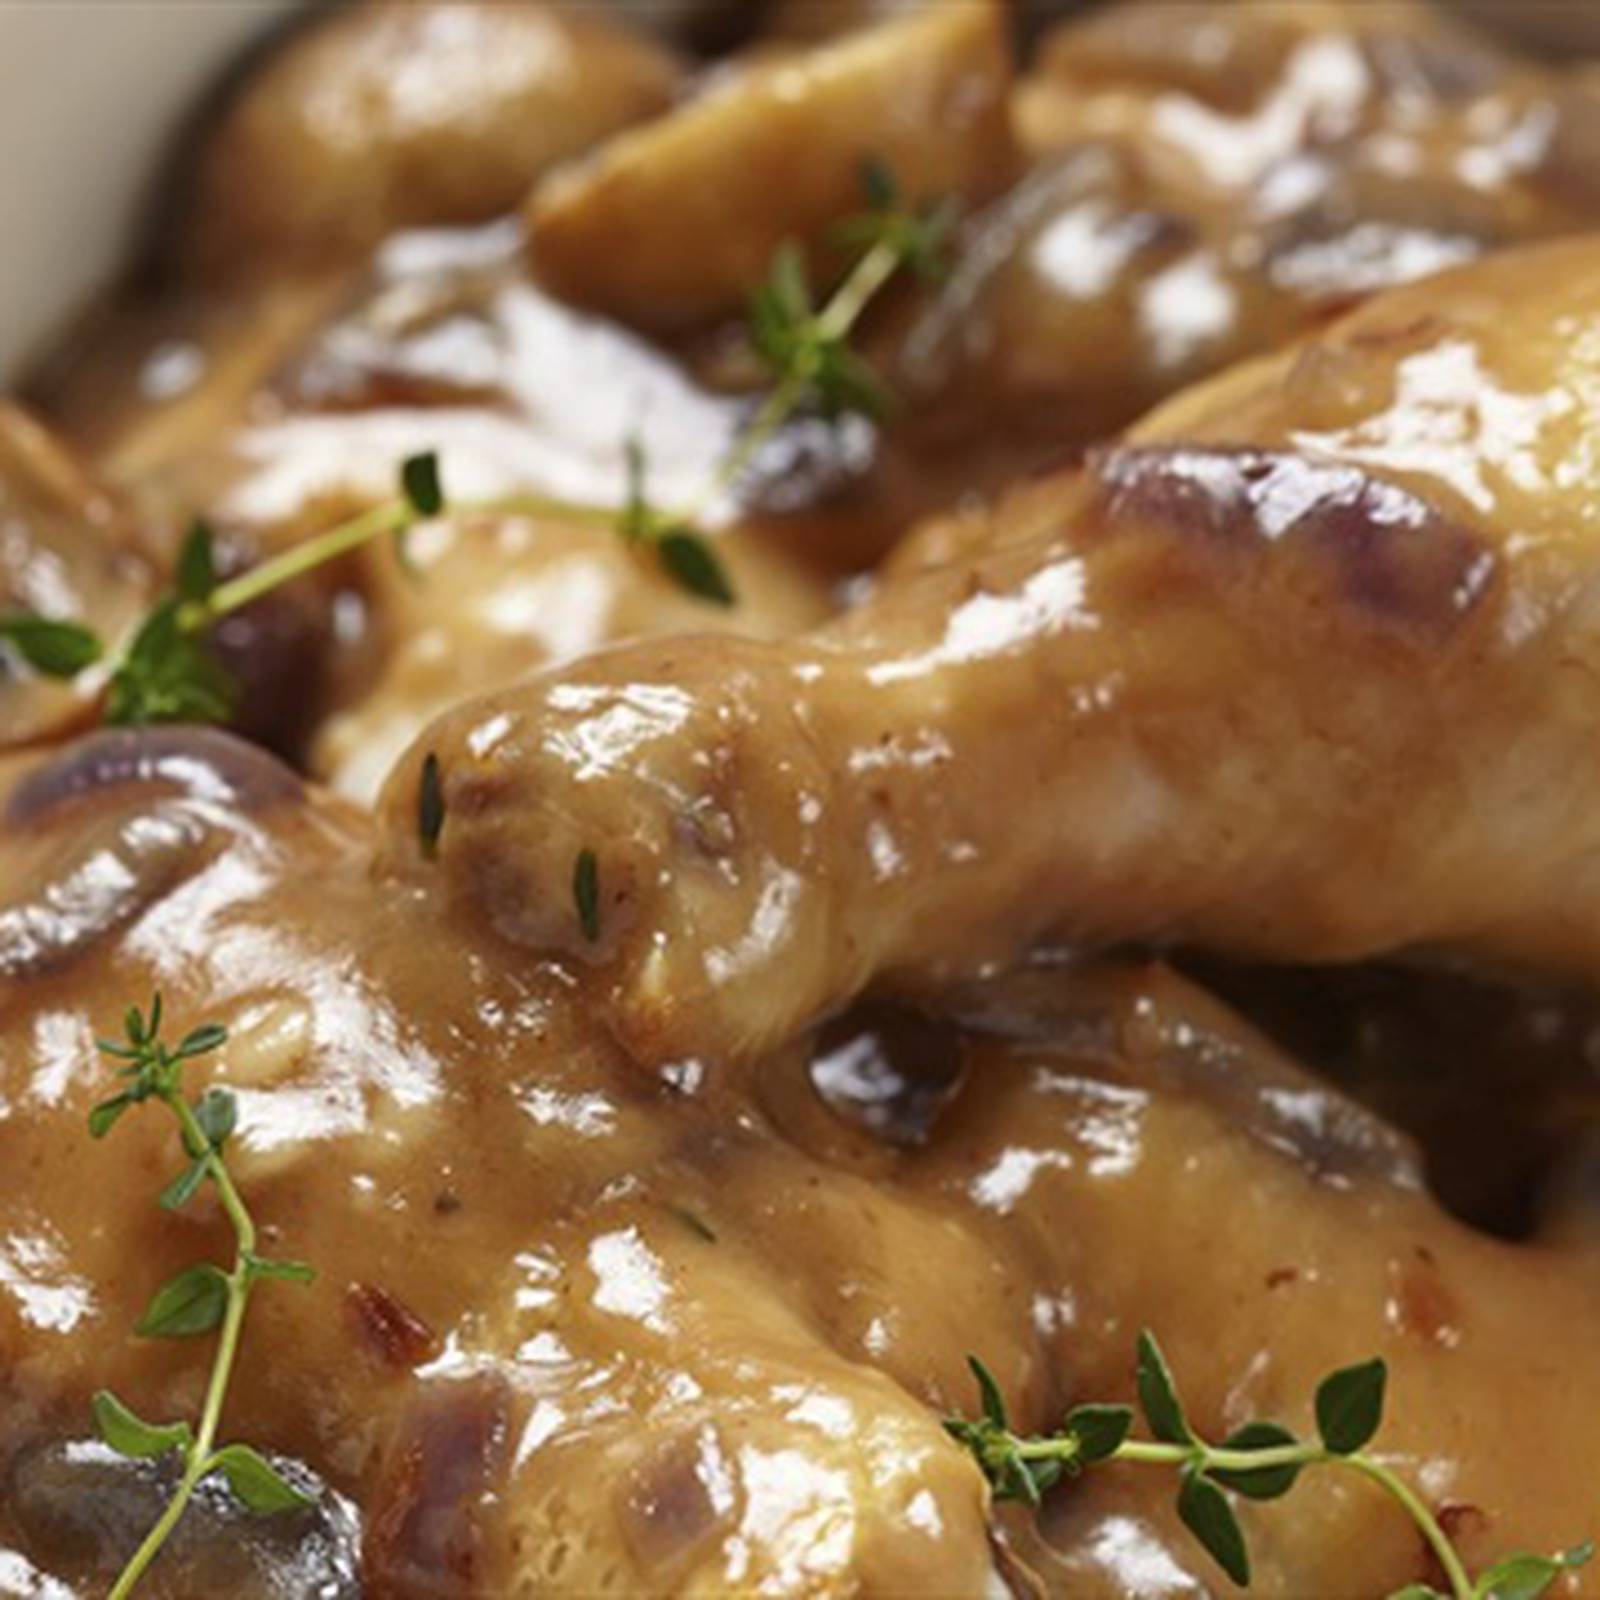 Aprenda a preparar estas colombinitas de pollo con sabor a maracuyá